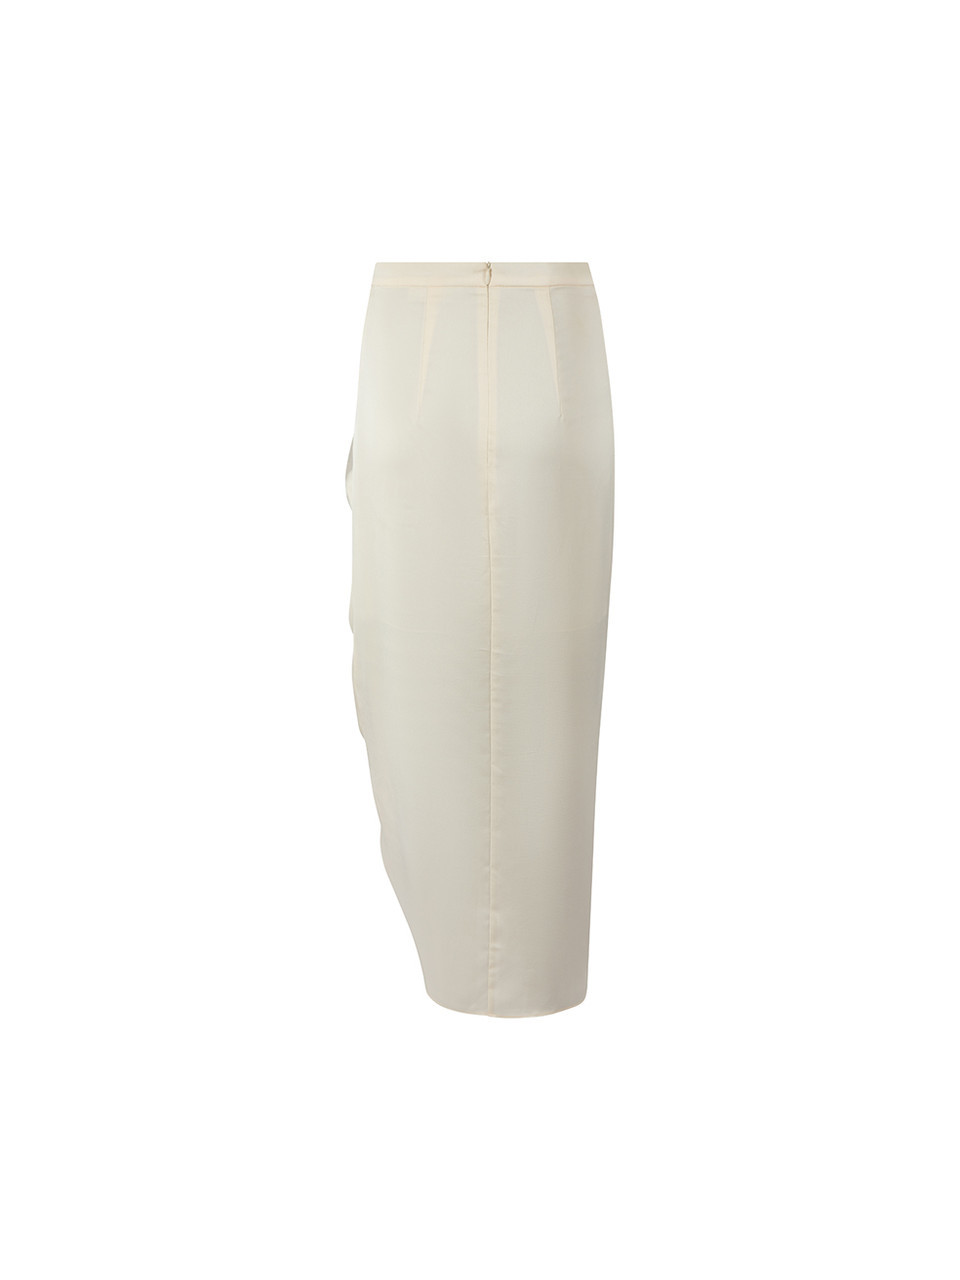 Shona Joy Cream Ruched Midi Skirt